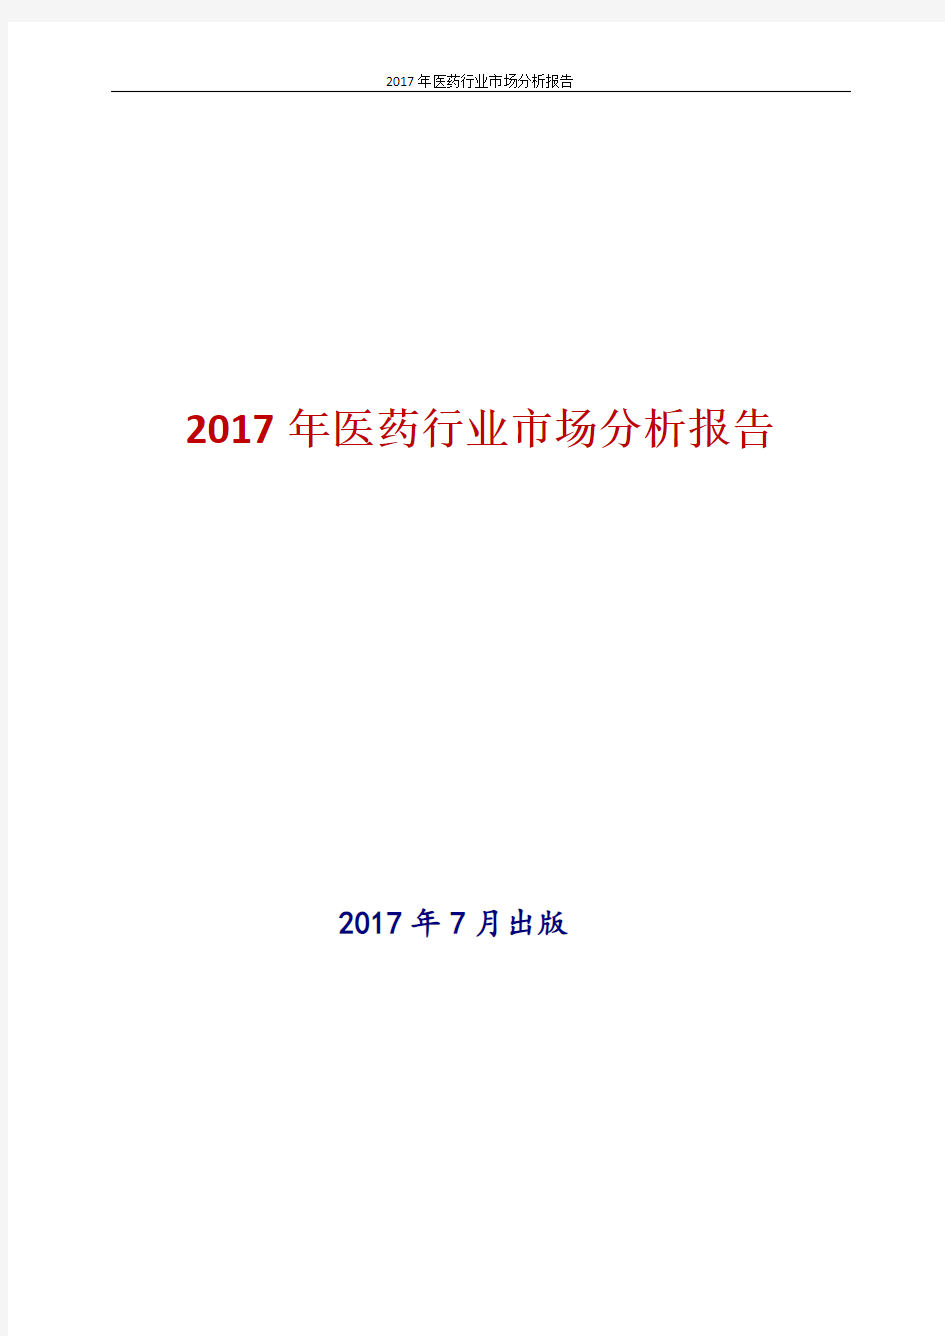 2017-2018年新版中国医药行业市场行业现状及发展前景趋势展望投资策略分析报告